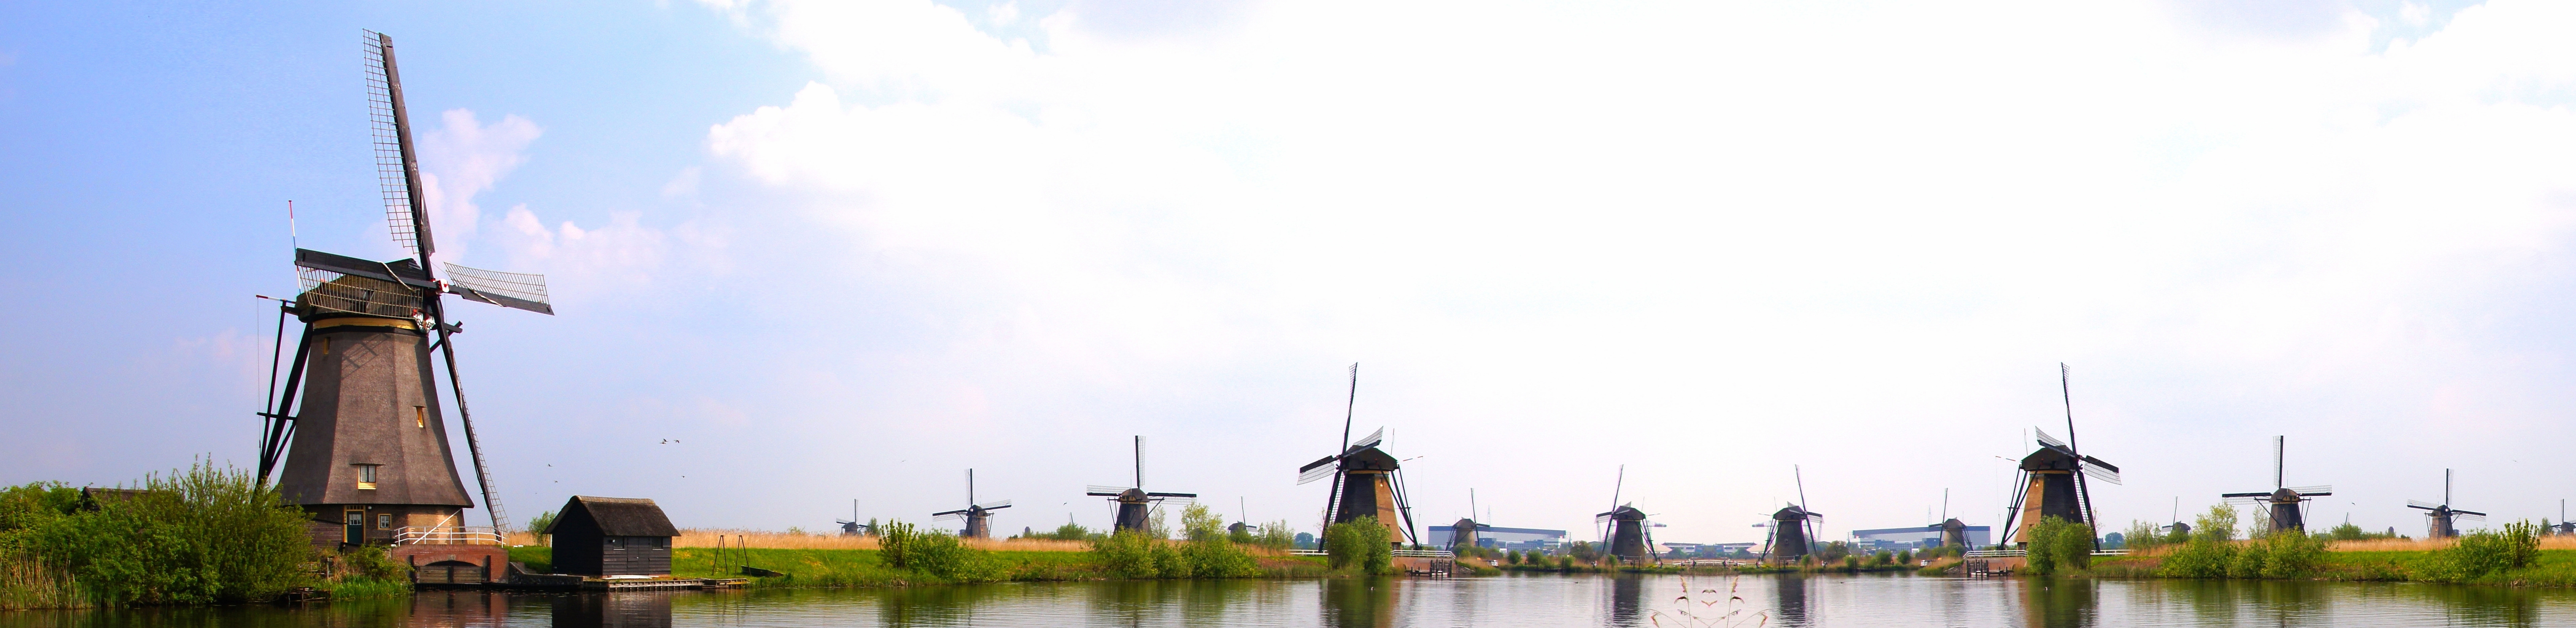 nederlandse windmolens